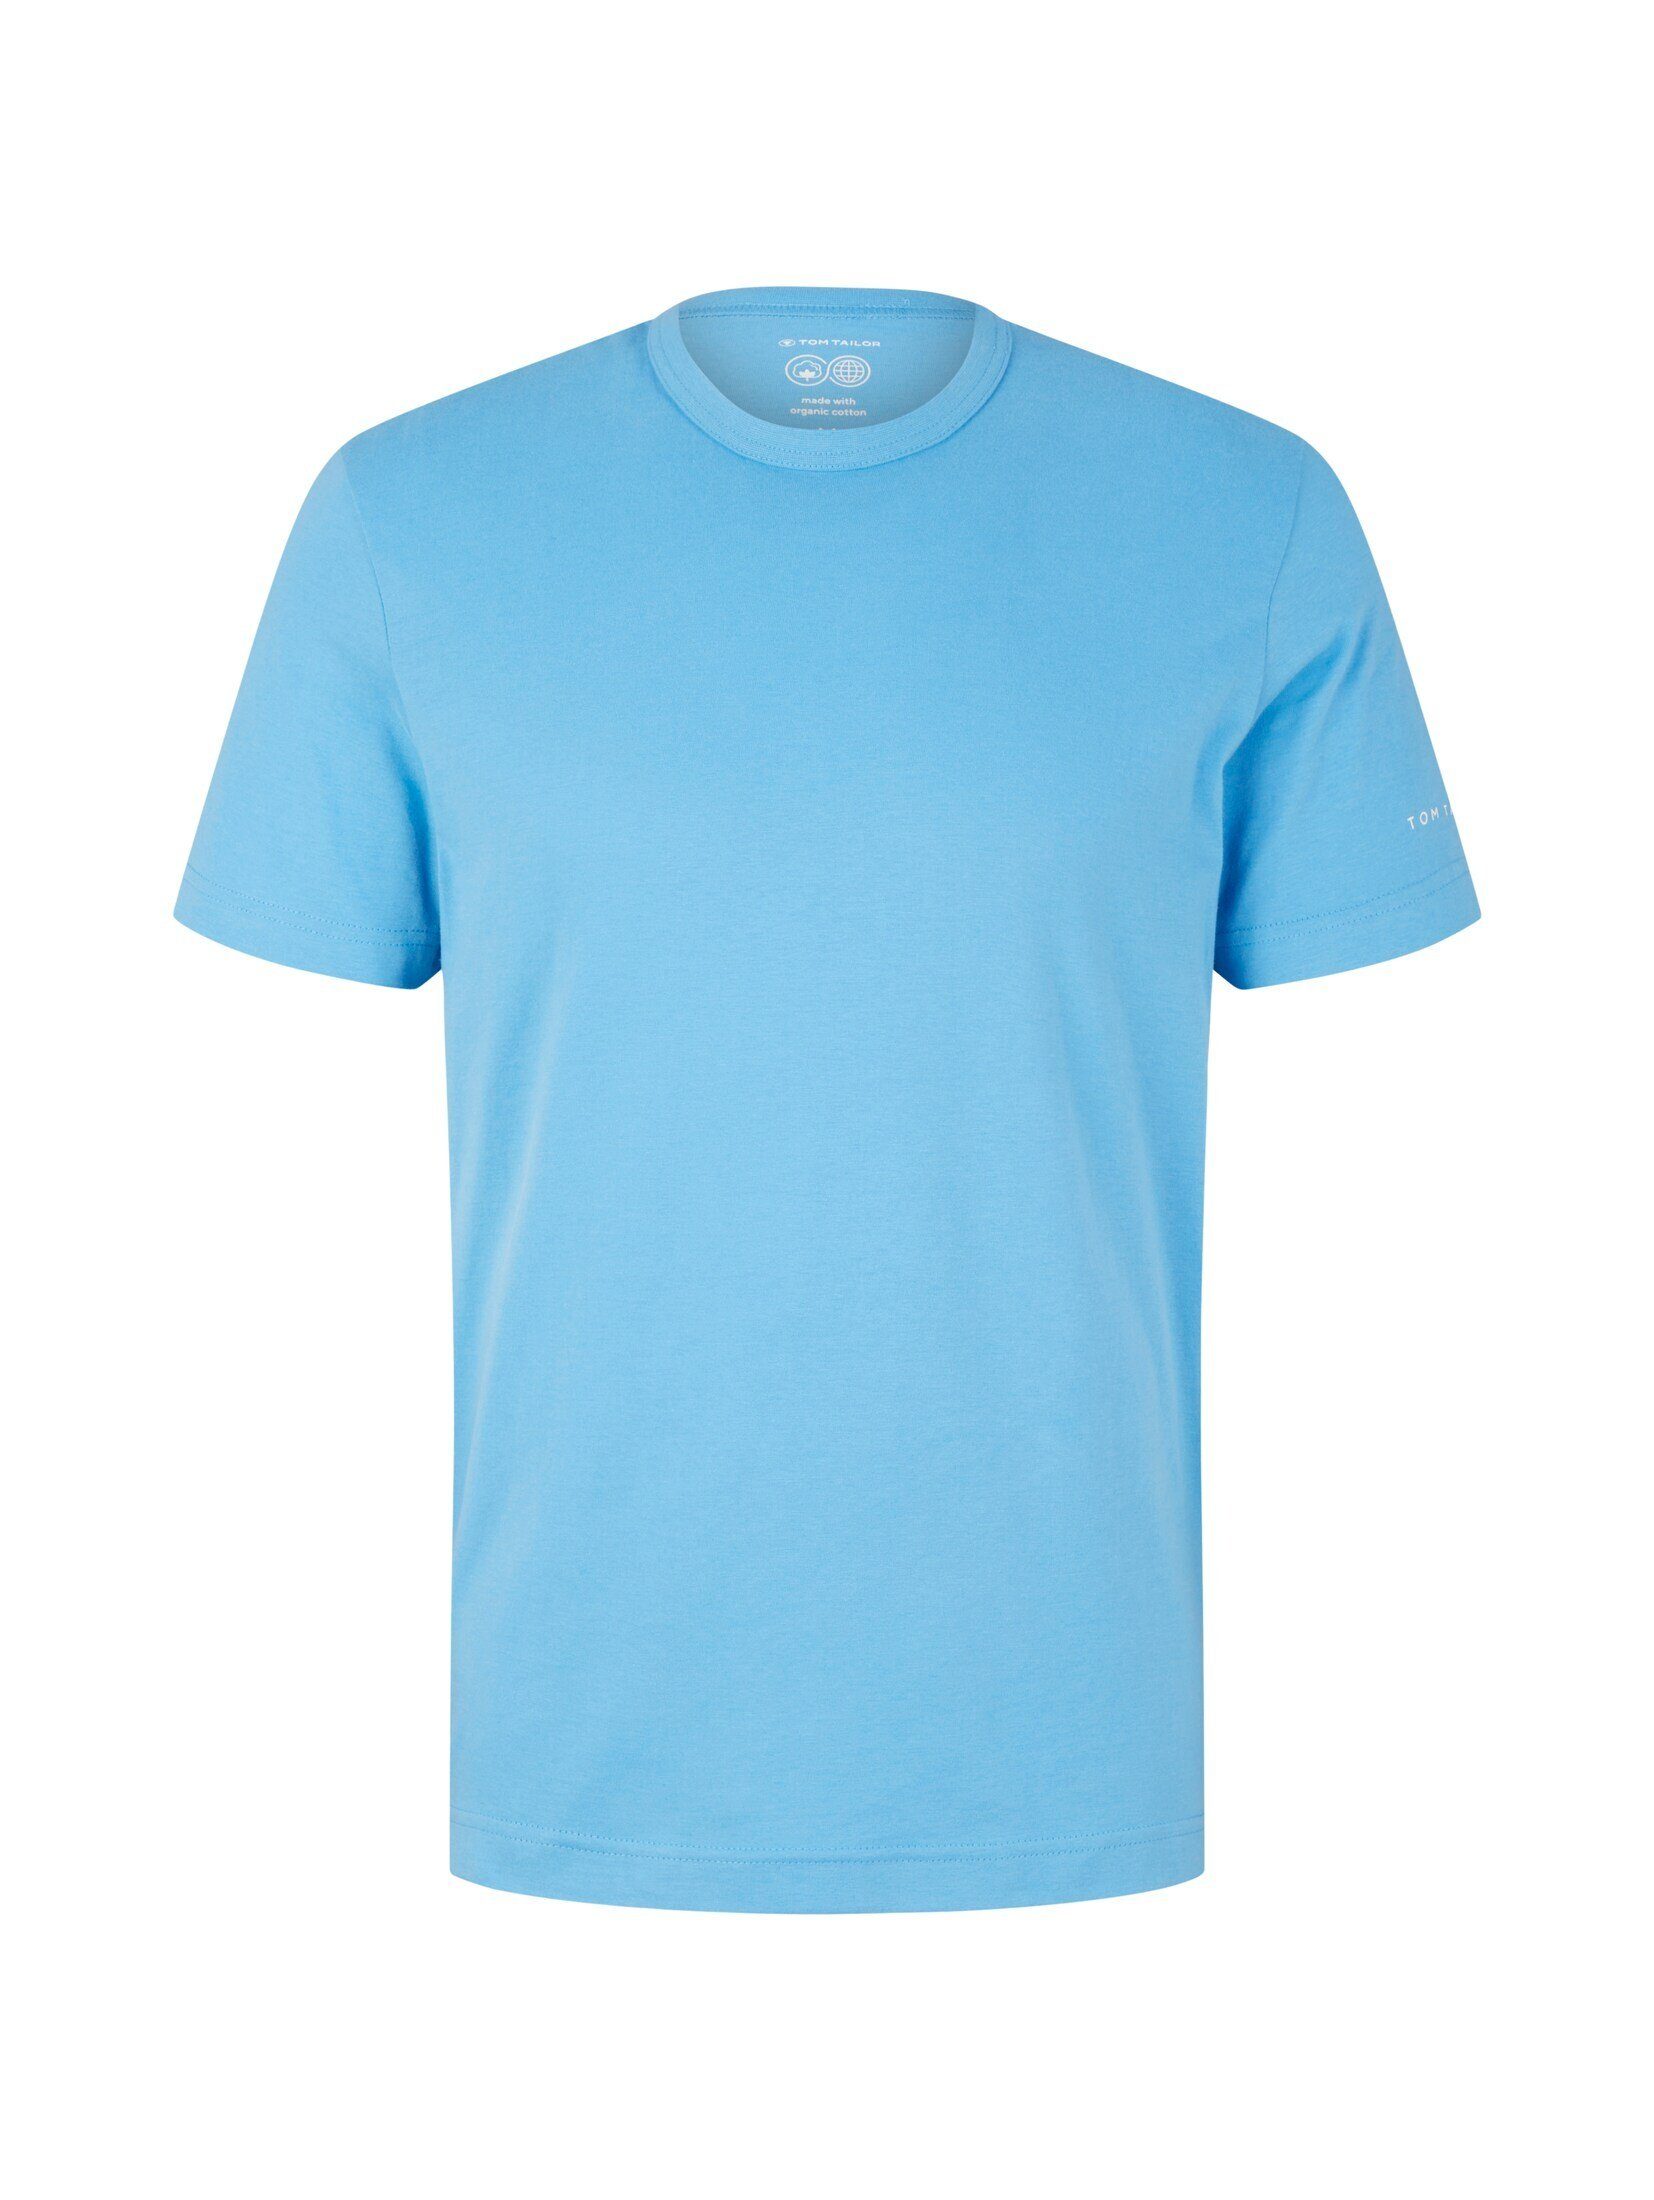 T-Shirt Basic TAILOR rainy T-Shirt sky blue TOM